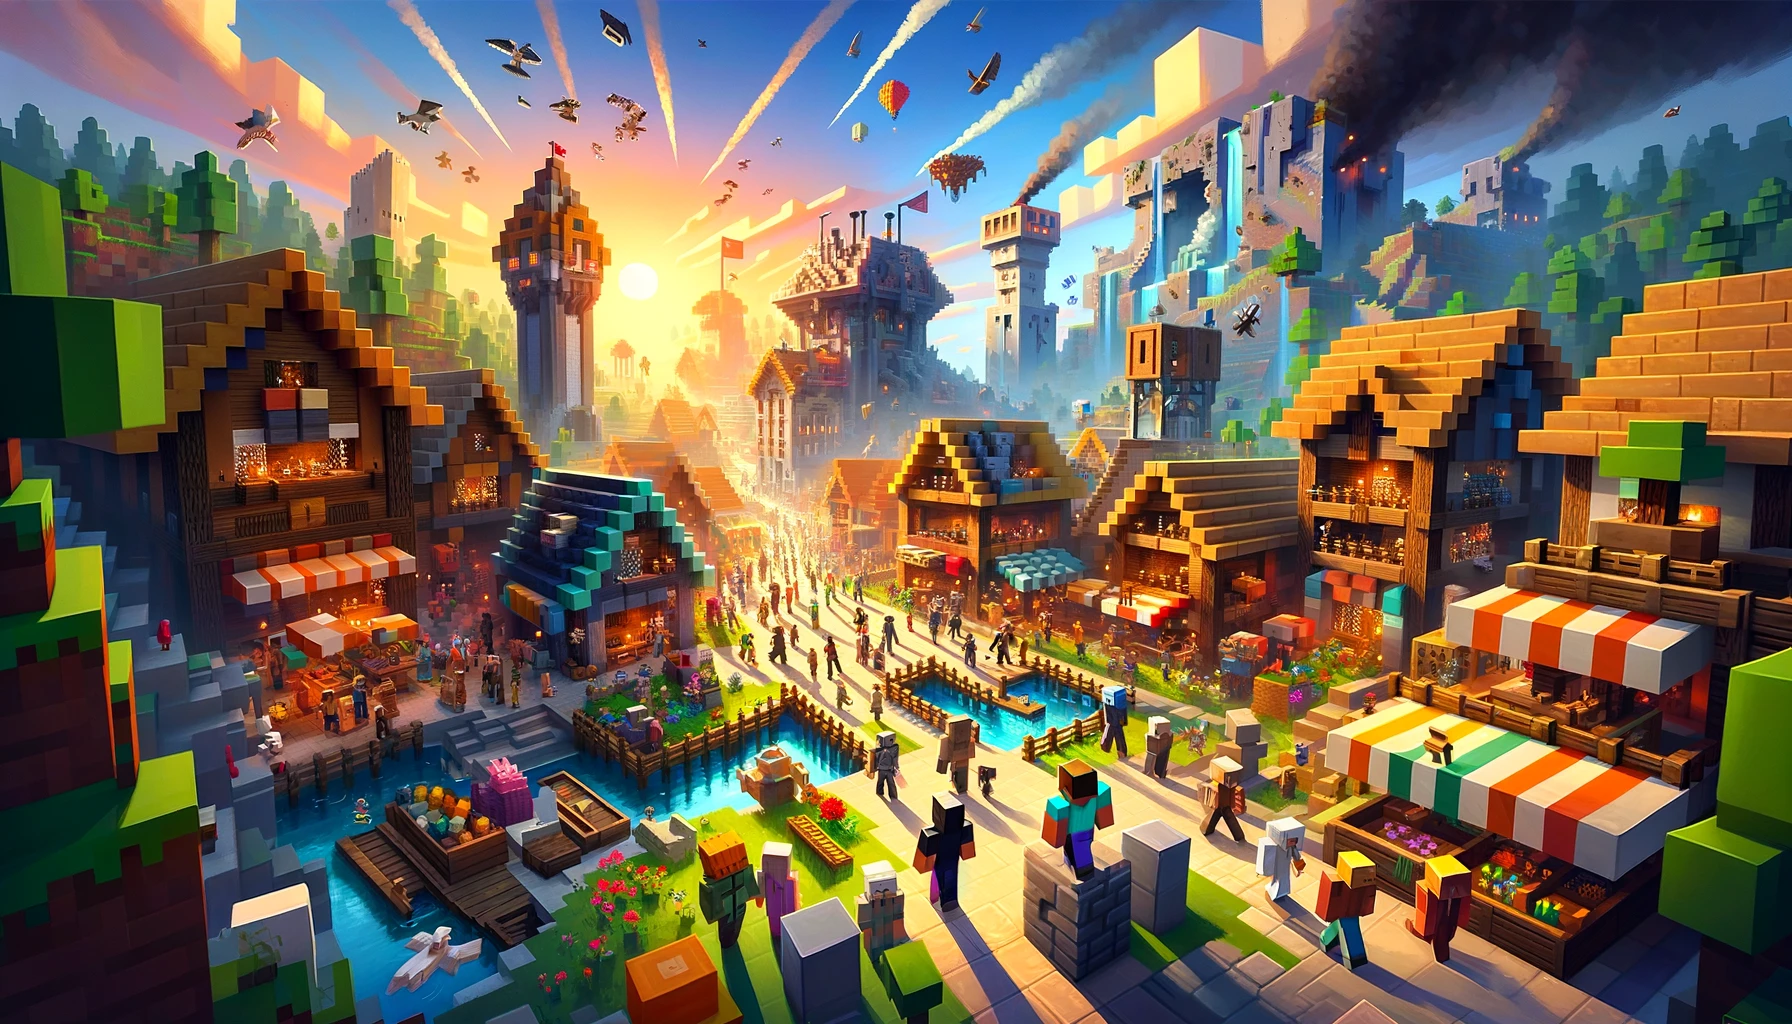 Minecraft 1.14: The Village and Pillage Update